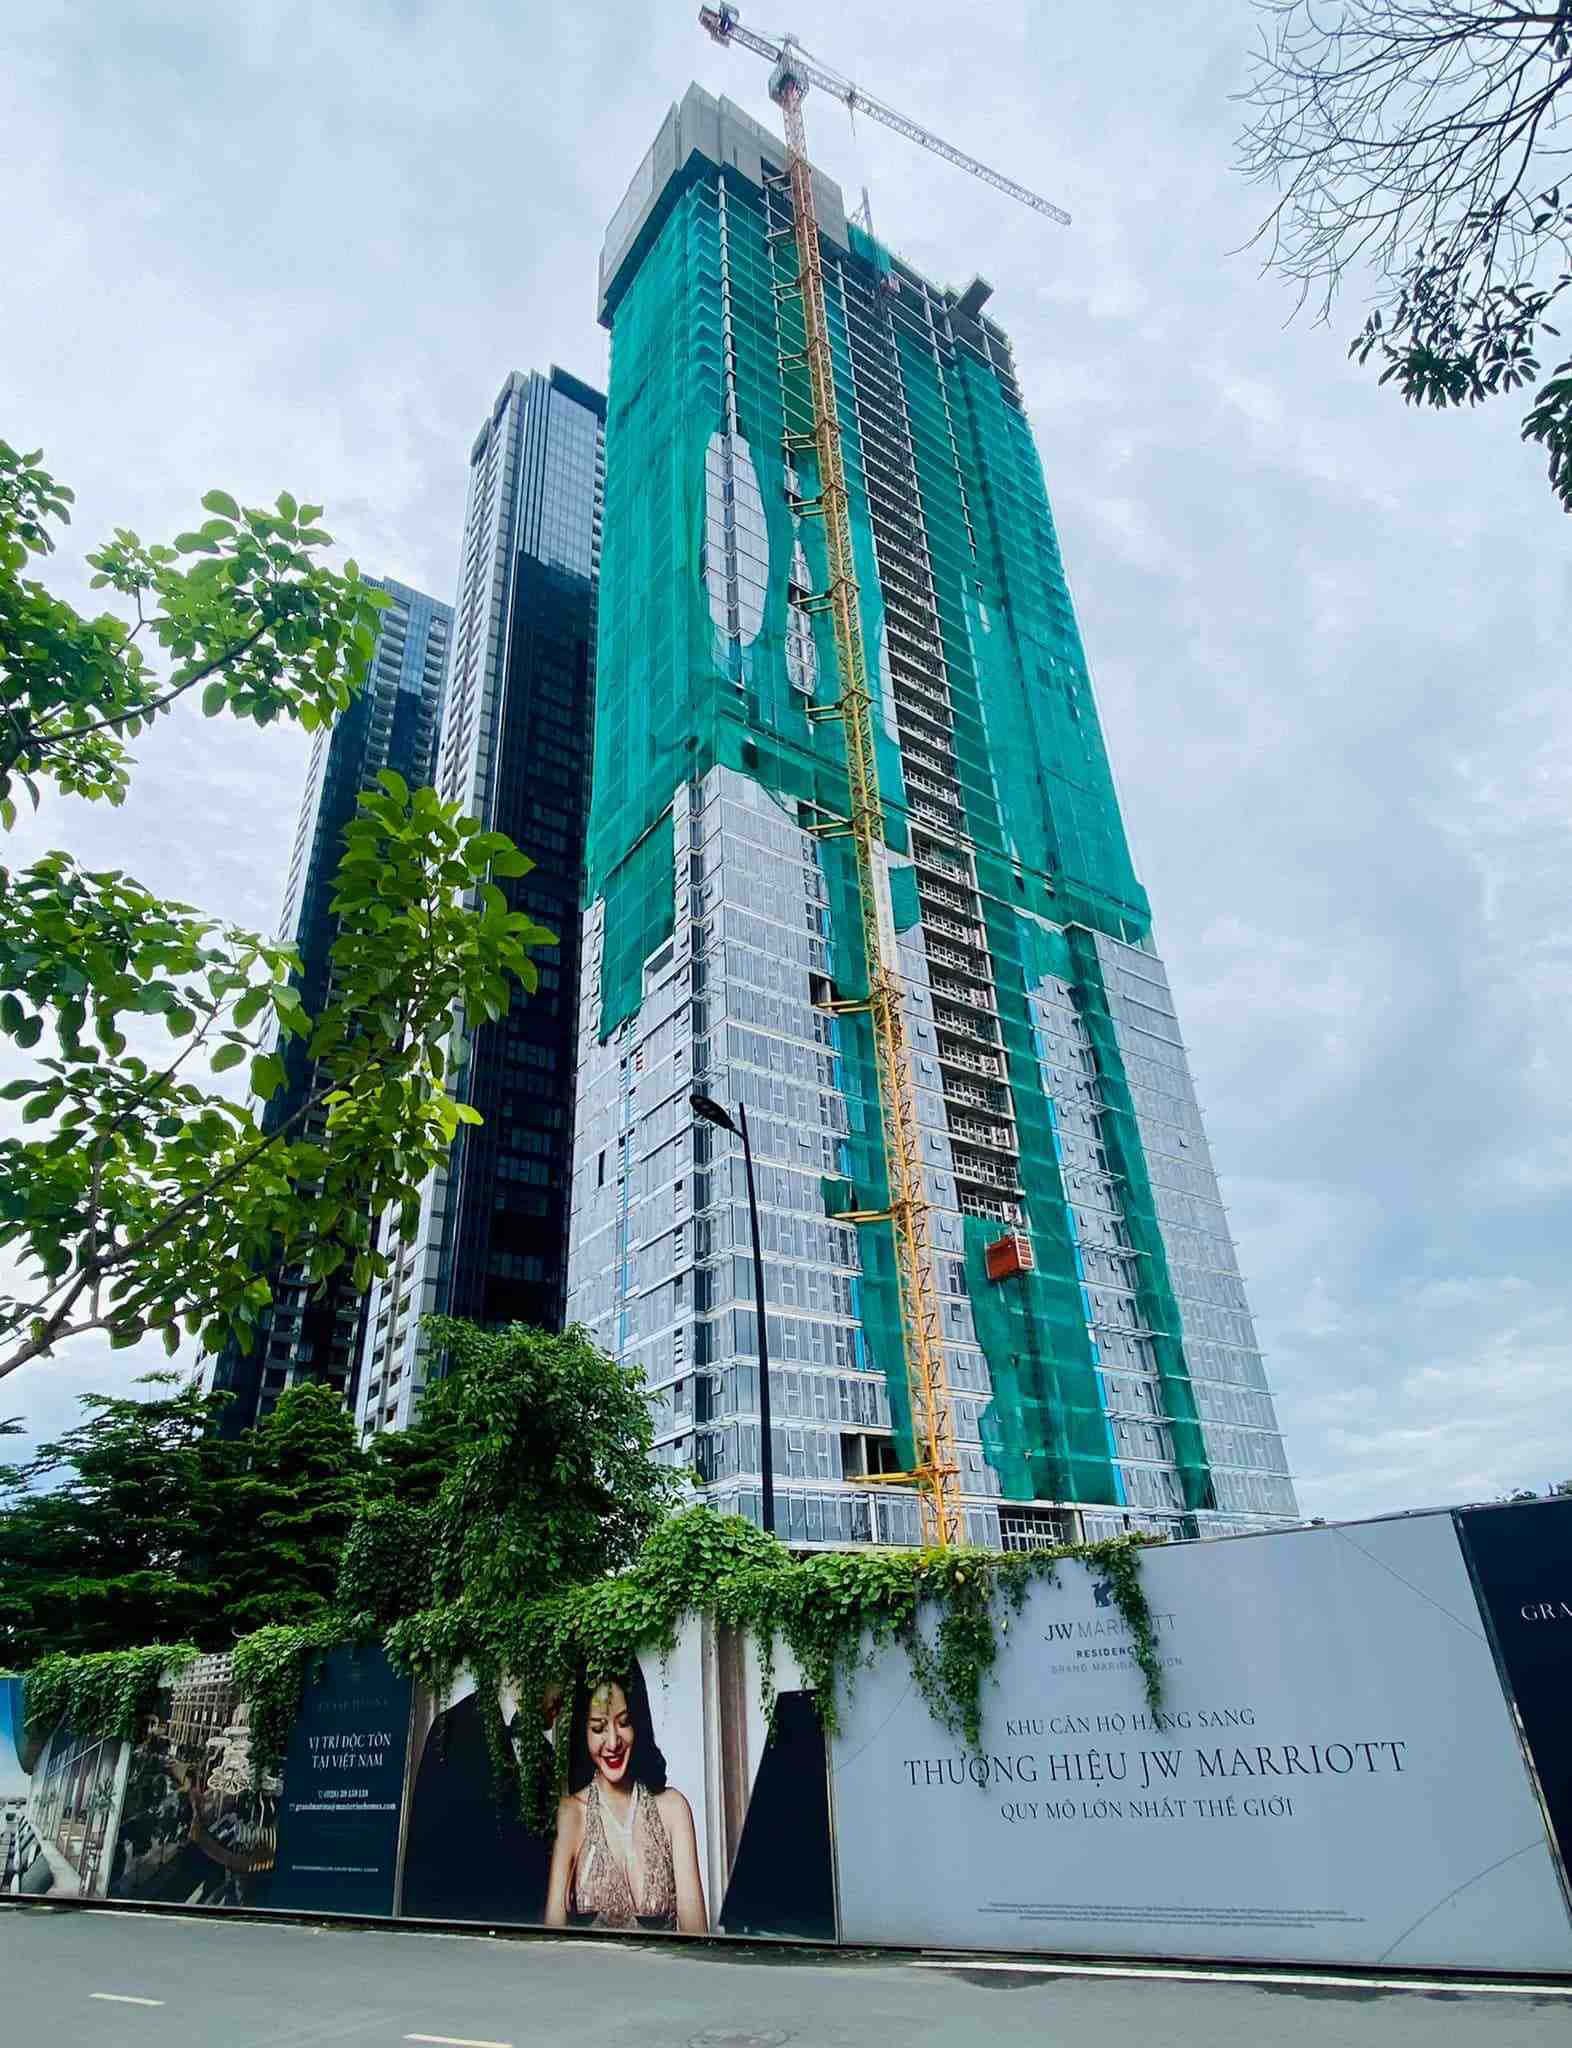 Cập nhật tiến độ dự án căn hộ hàng hiệu Grand Marina, Saigon tháng 7/2022